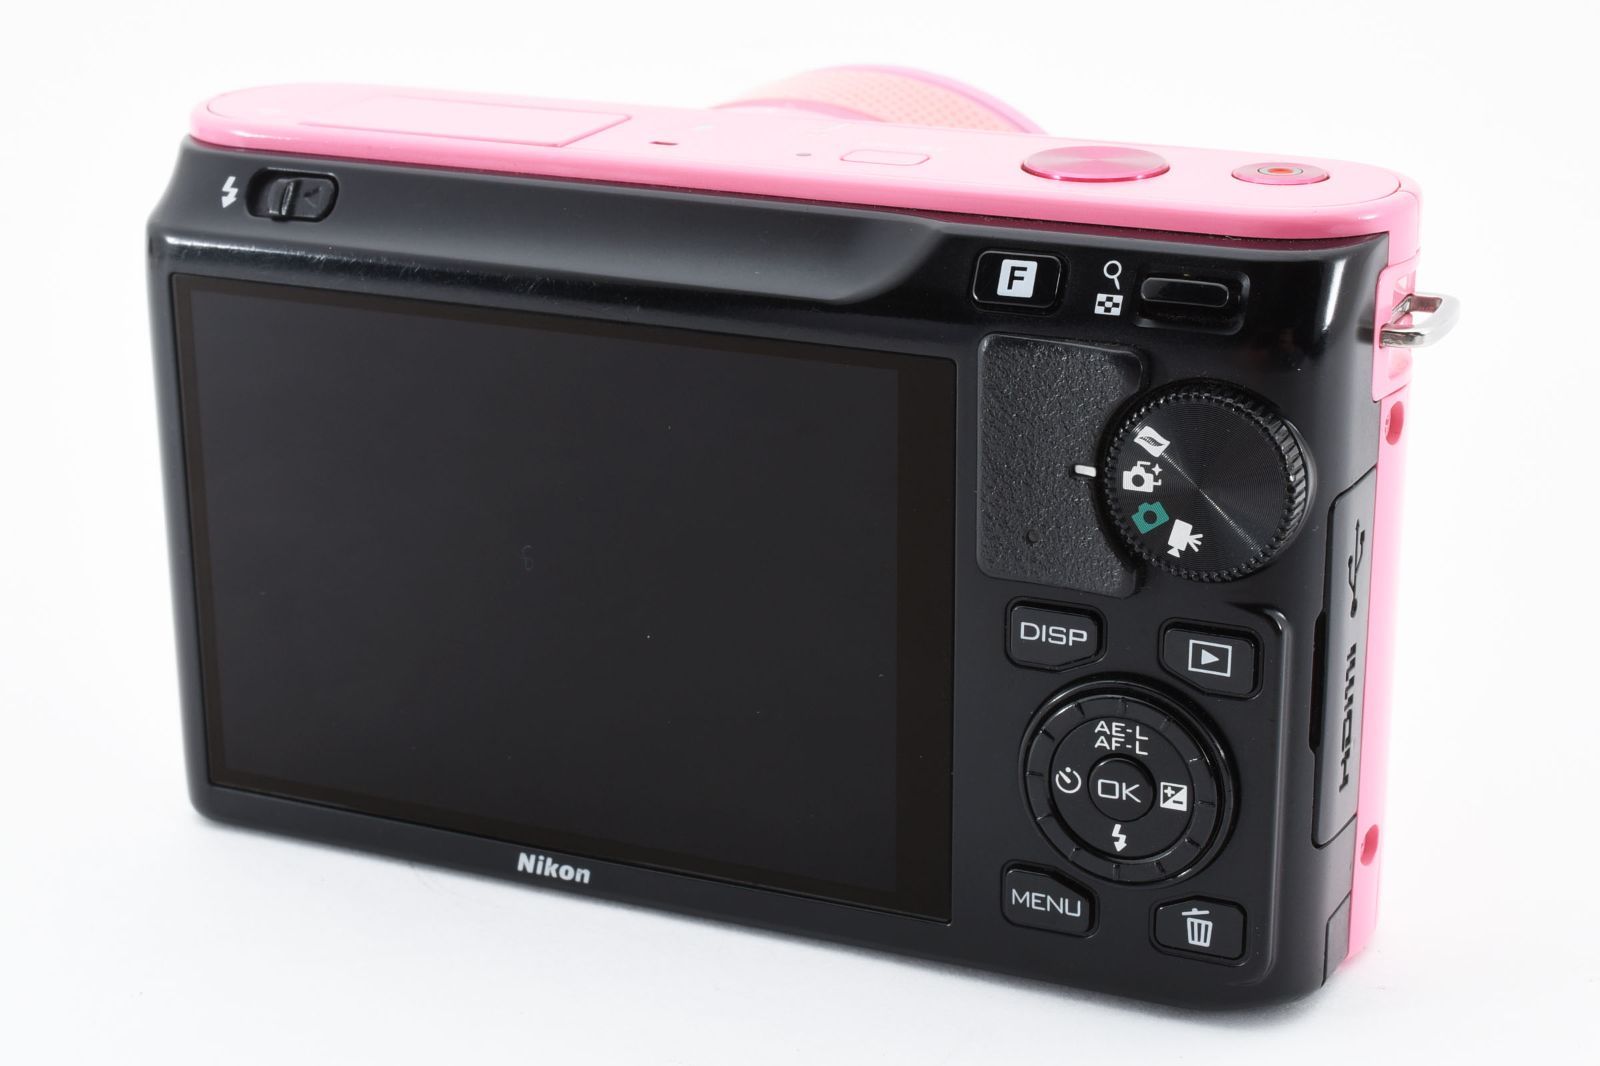 3444 【ジャンク】 Nikon 1 J1 Digital Camera 10-30mm Lens Kit Pink 